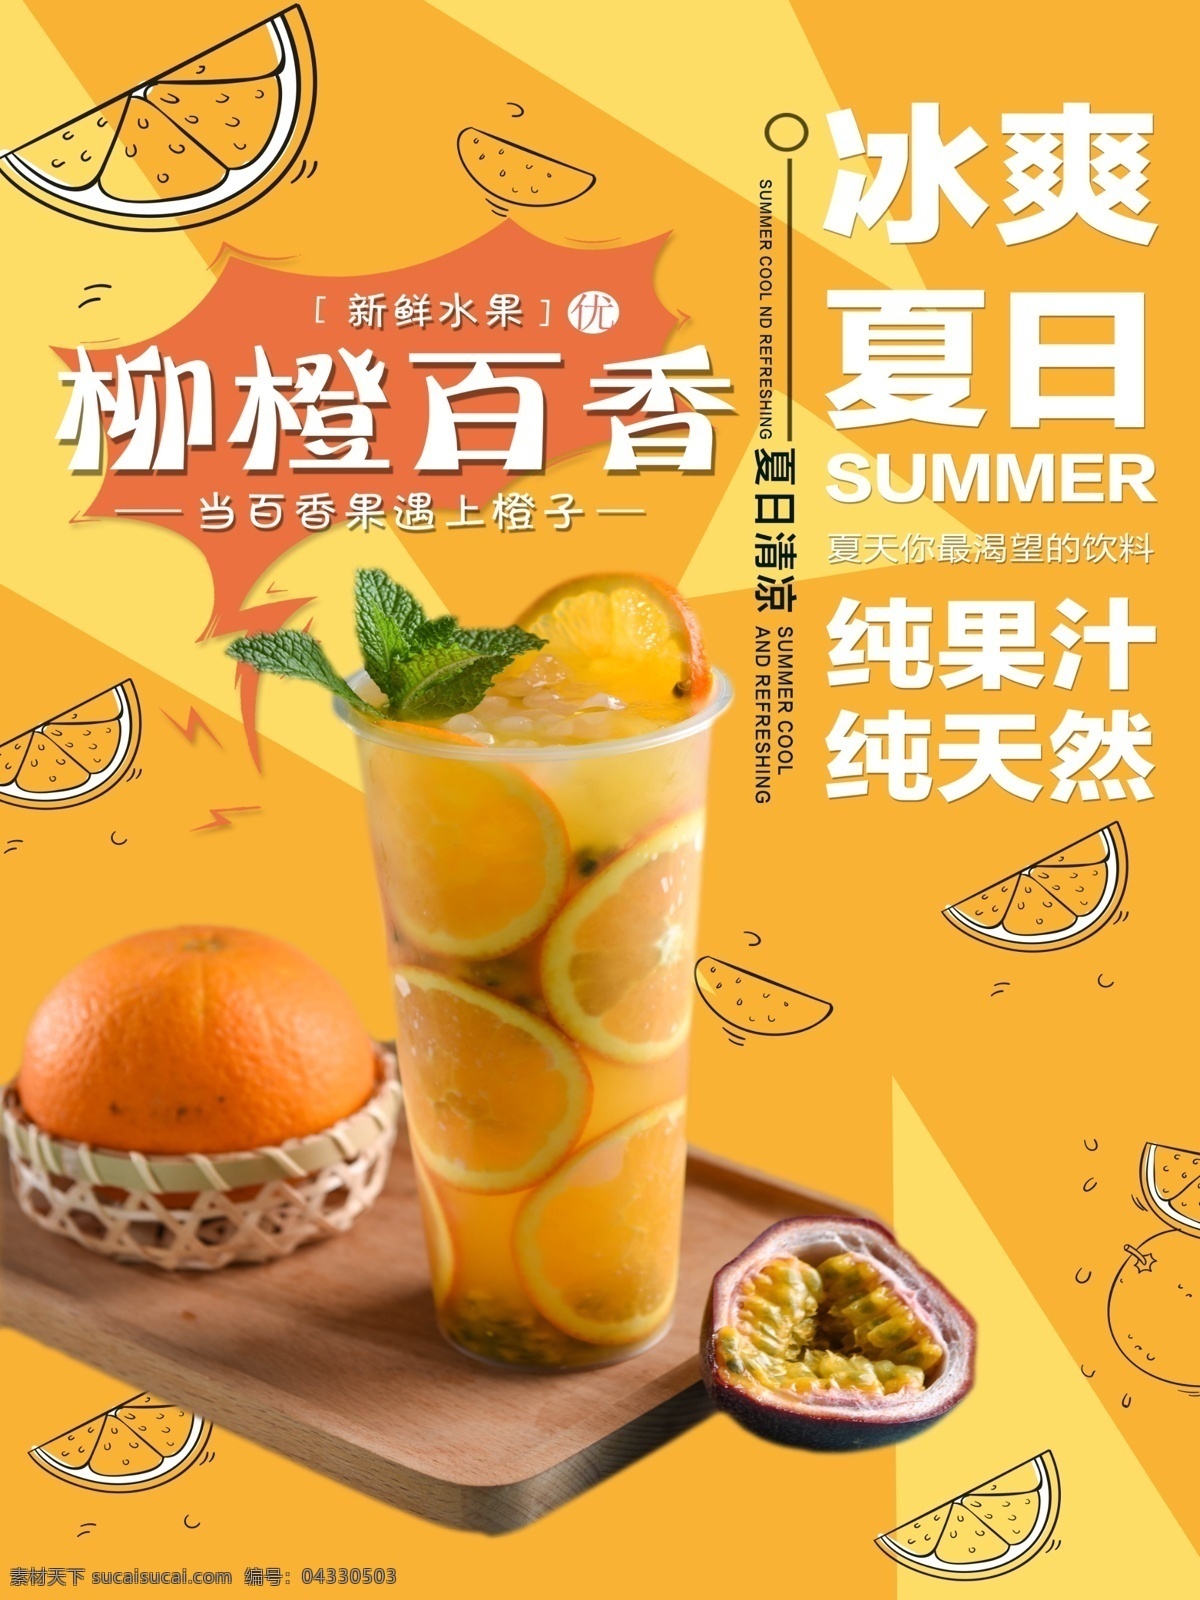 夏日饮品 柳橙 百香果 夏日 奶茶 饮品 饮料 清爽 清凉一夏 果汁